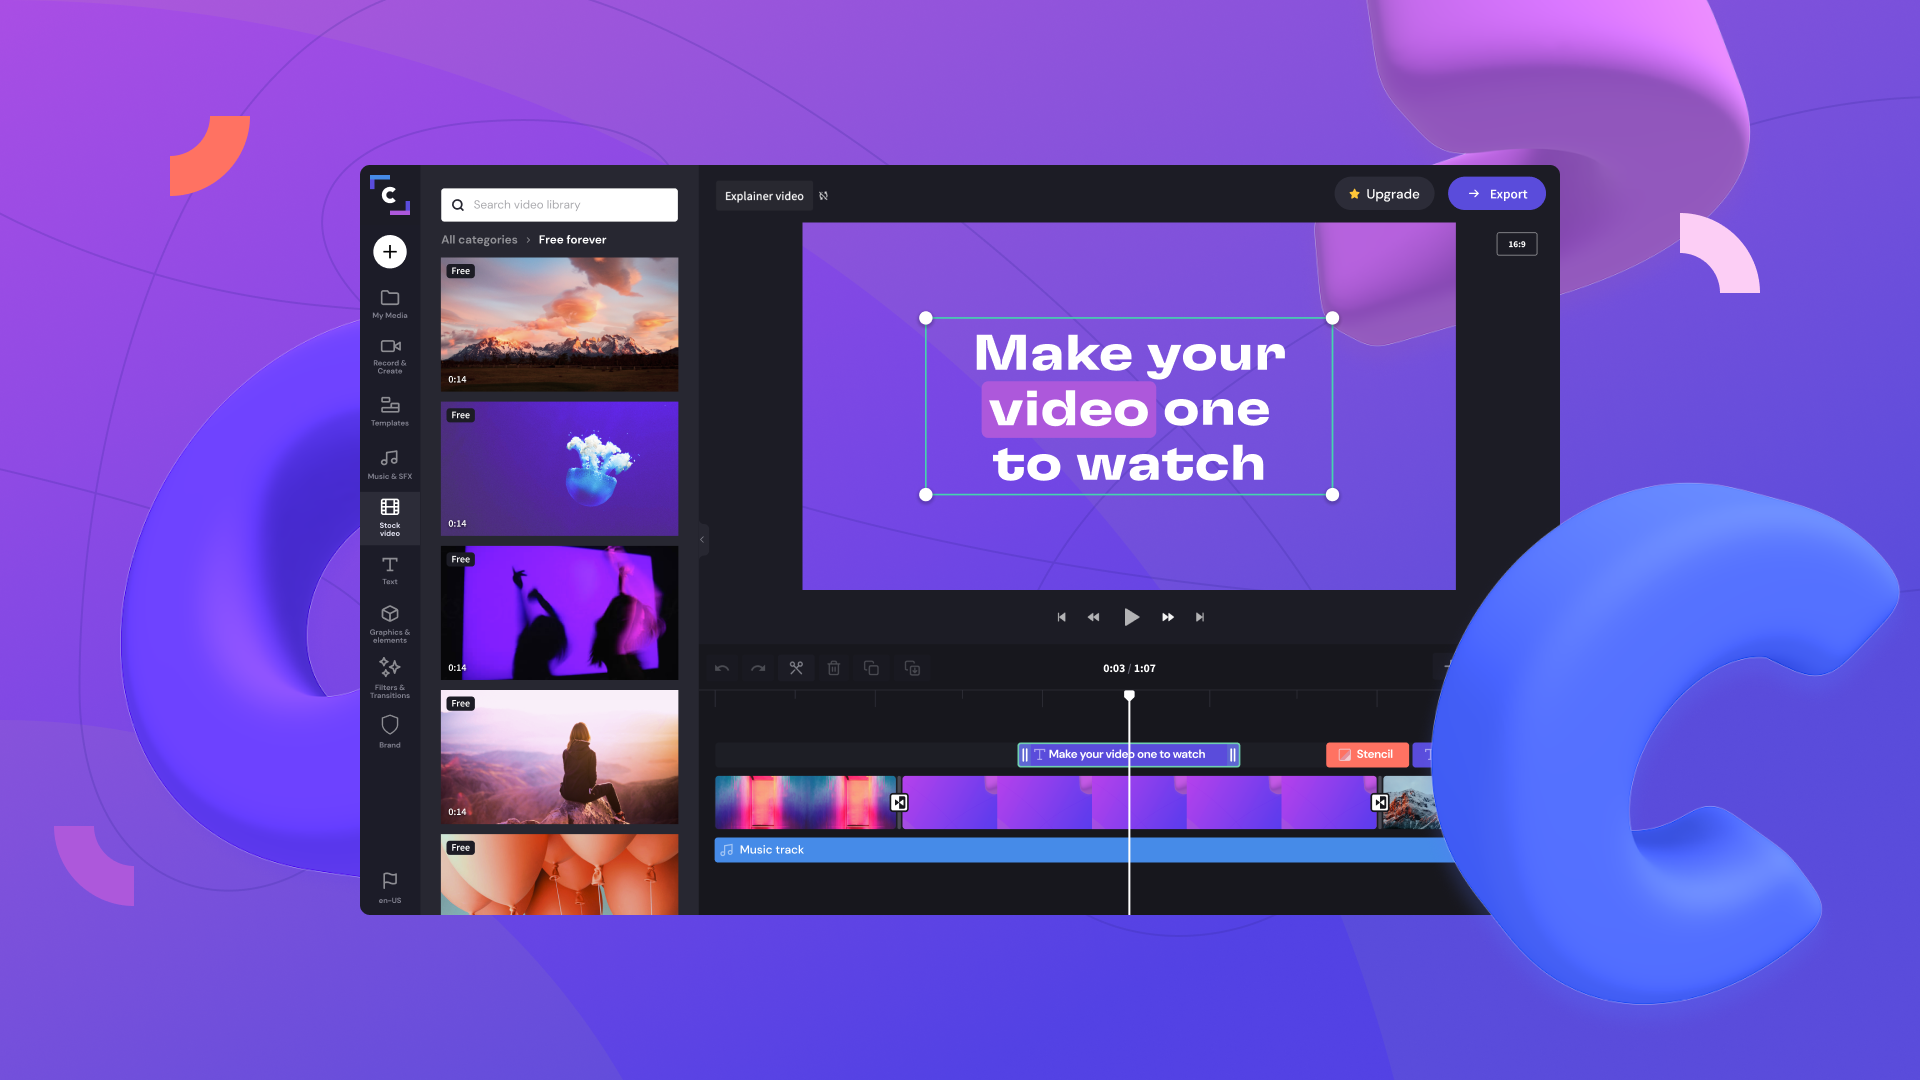 Tangkapan skrin aplikasi Clipchamp terletak pada latar belakang yang berwarna-warni. Video yang sedang diedit dalam aplikasi Clipchamp termasuk teks "Make your video one to watch".